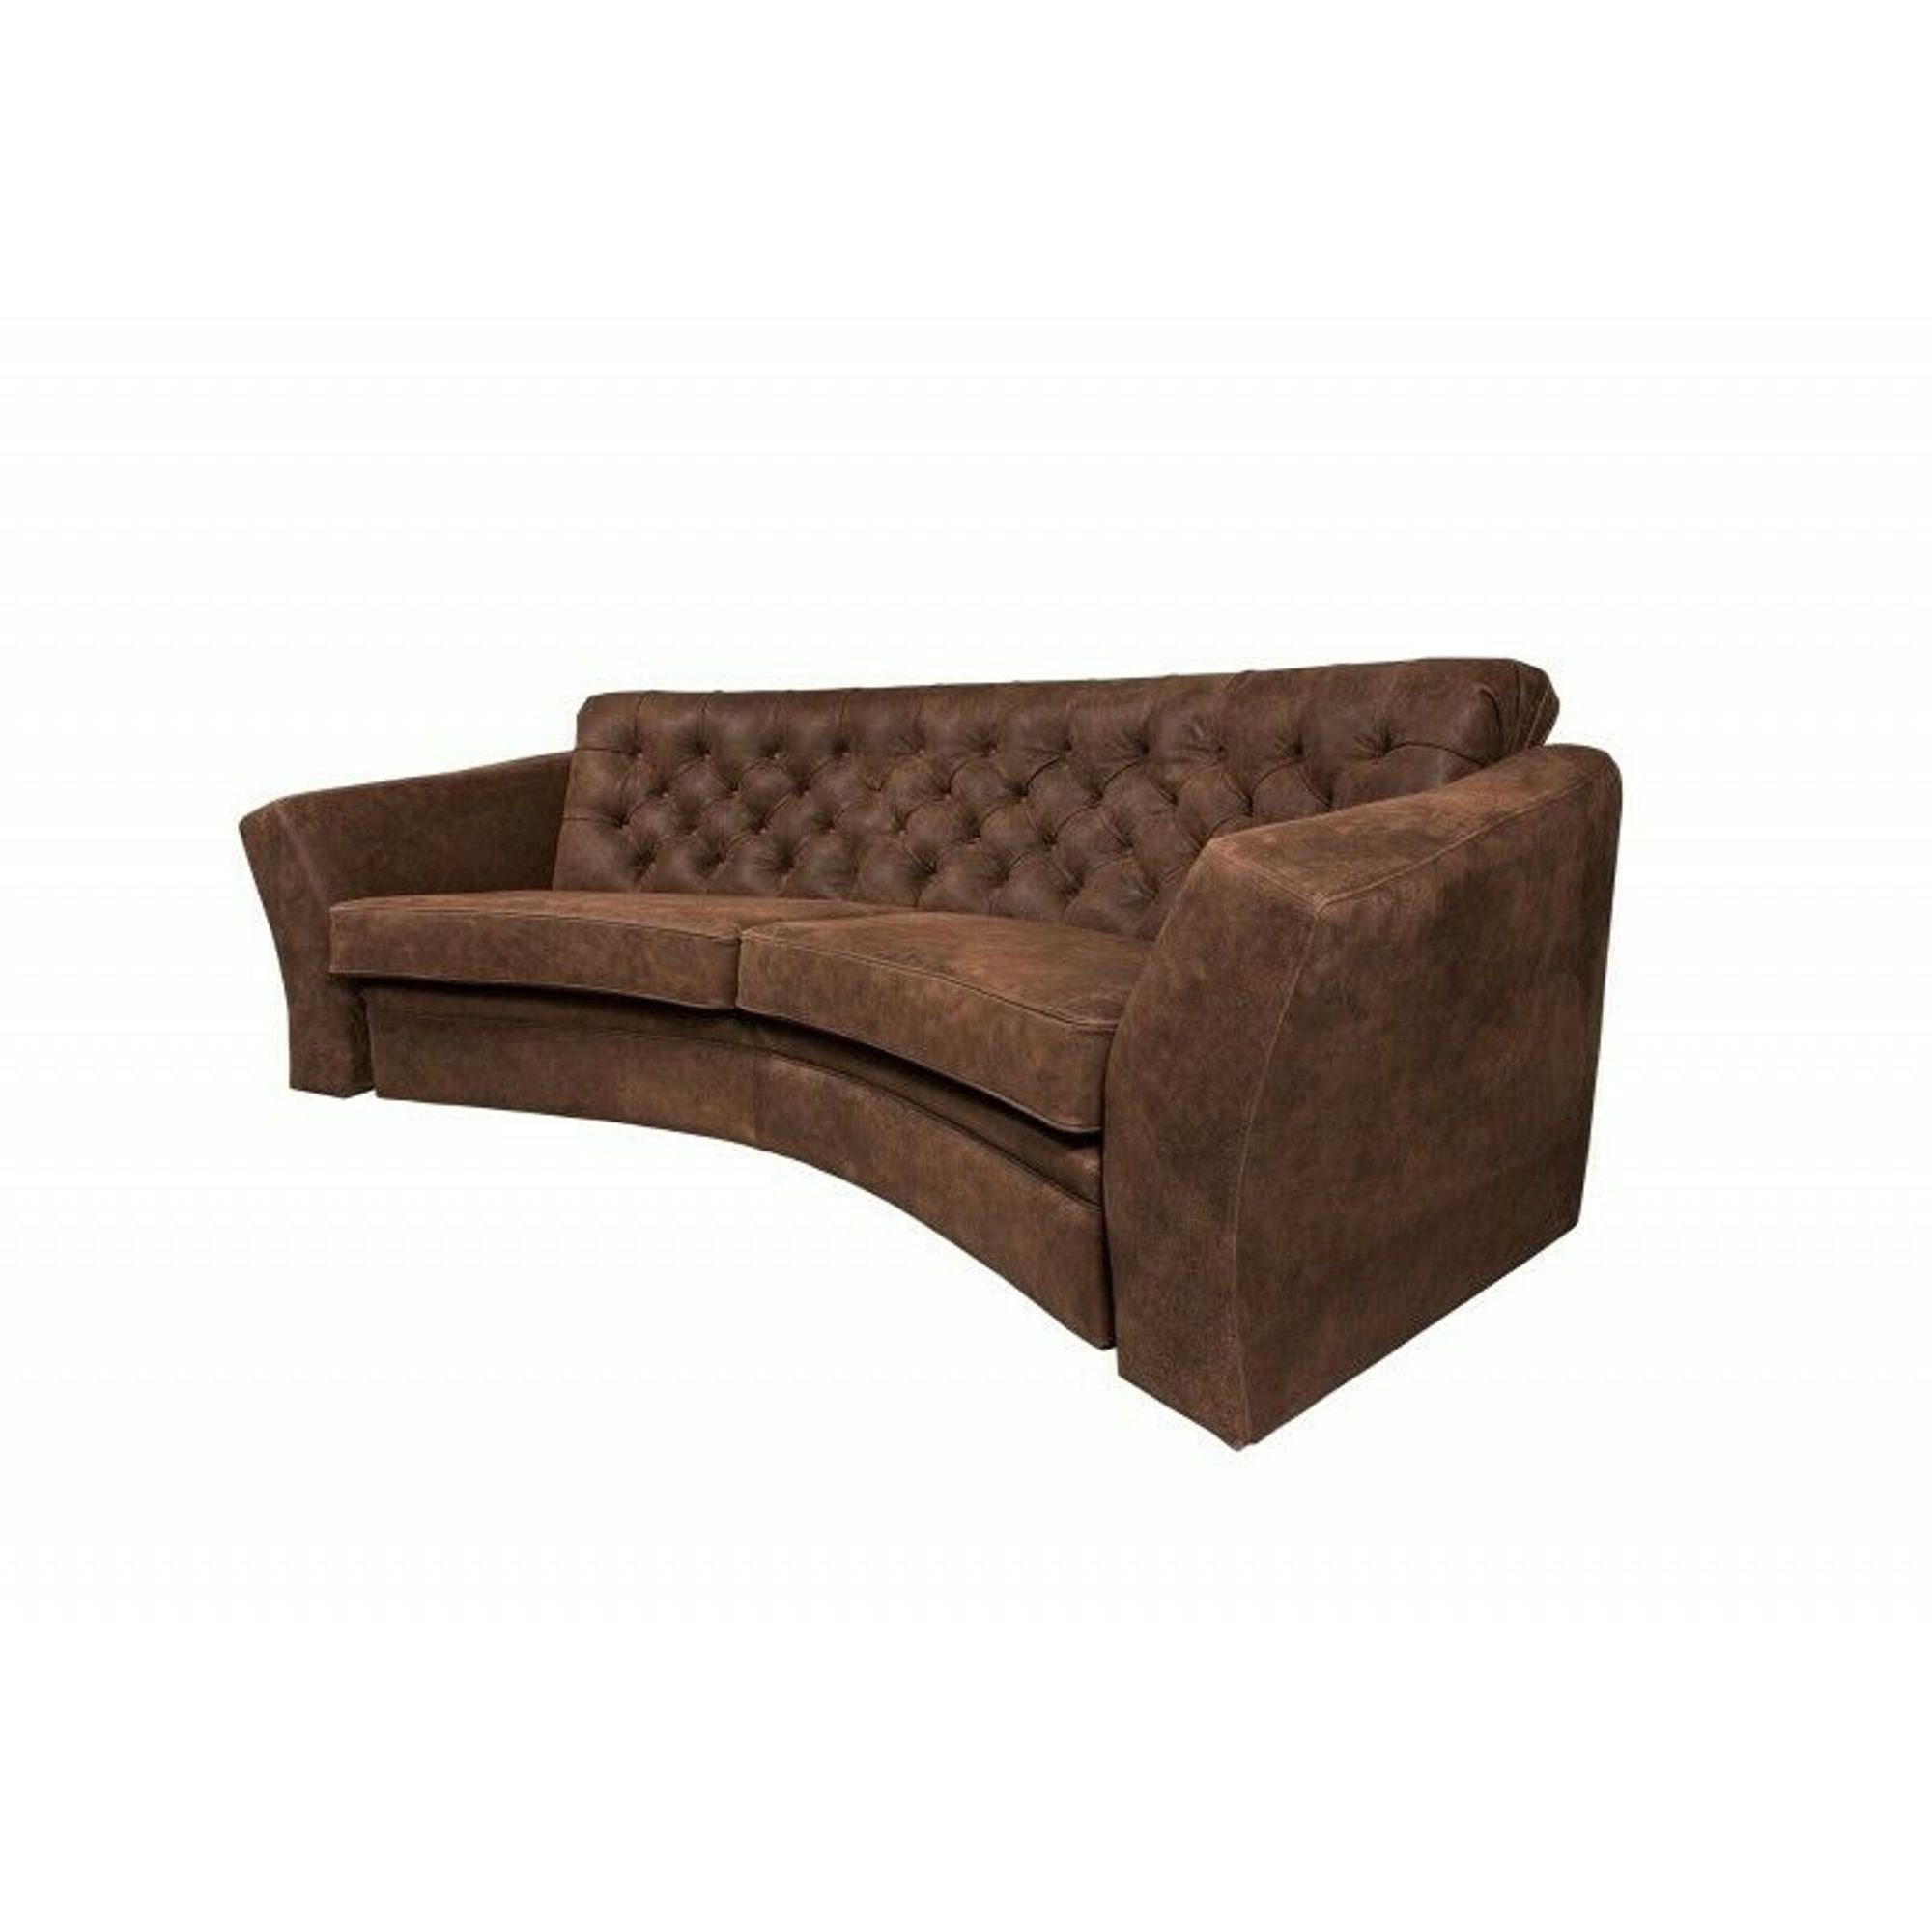 Europe in Braun Chesterfield, Made Grauer Sofa JVmoebel Polstermöbel Halbrundes Dreisitzer Sofa Luxus